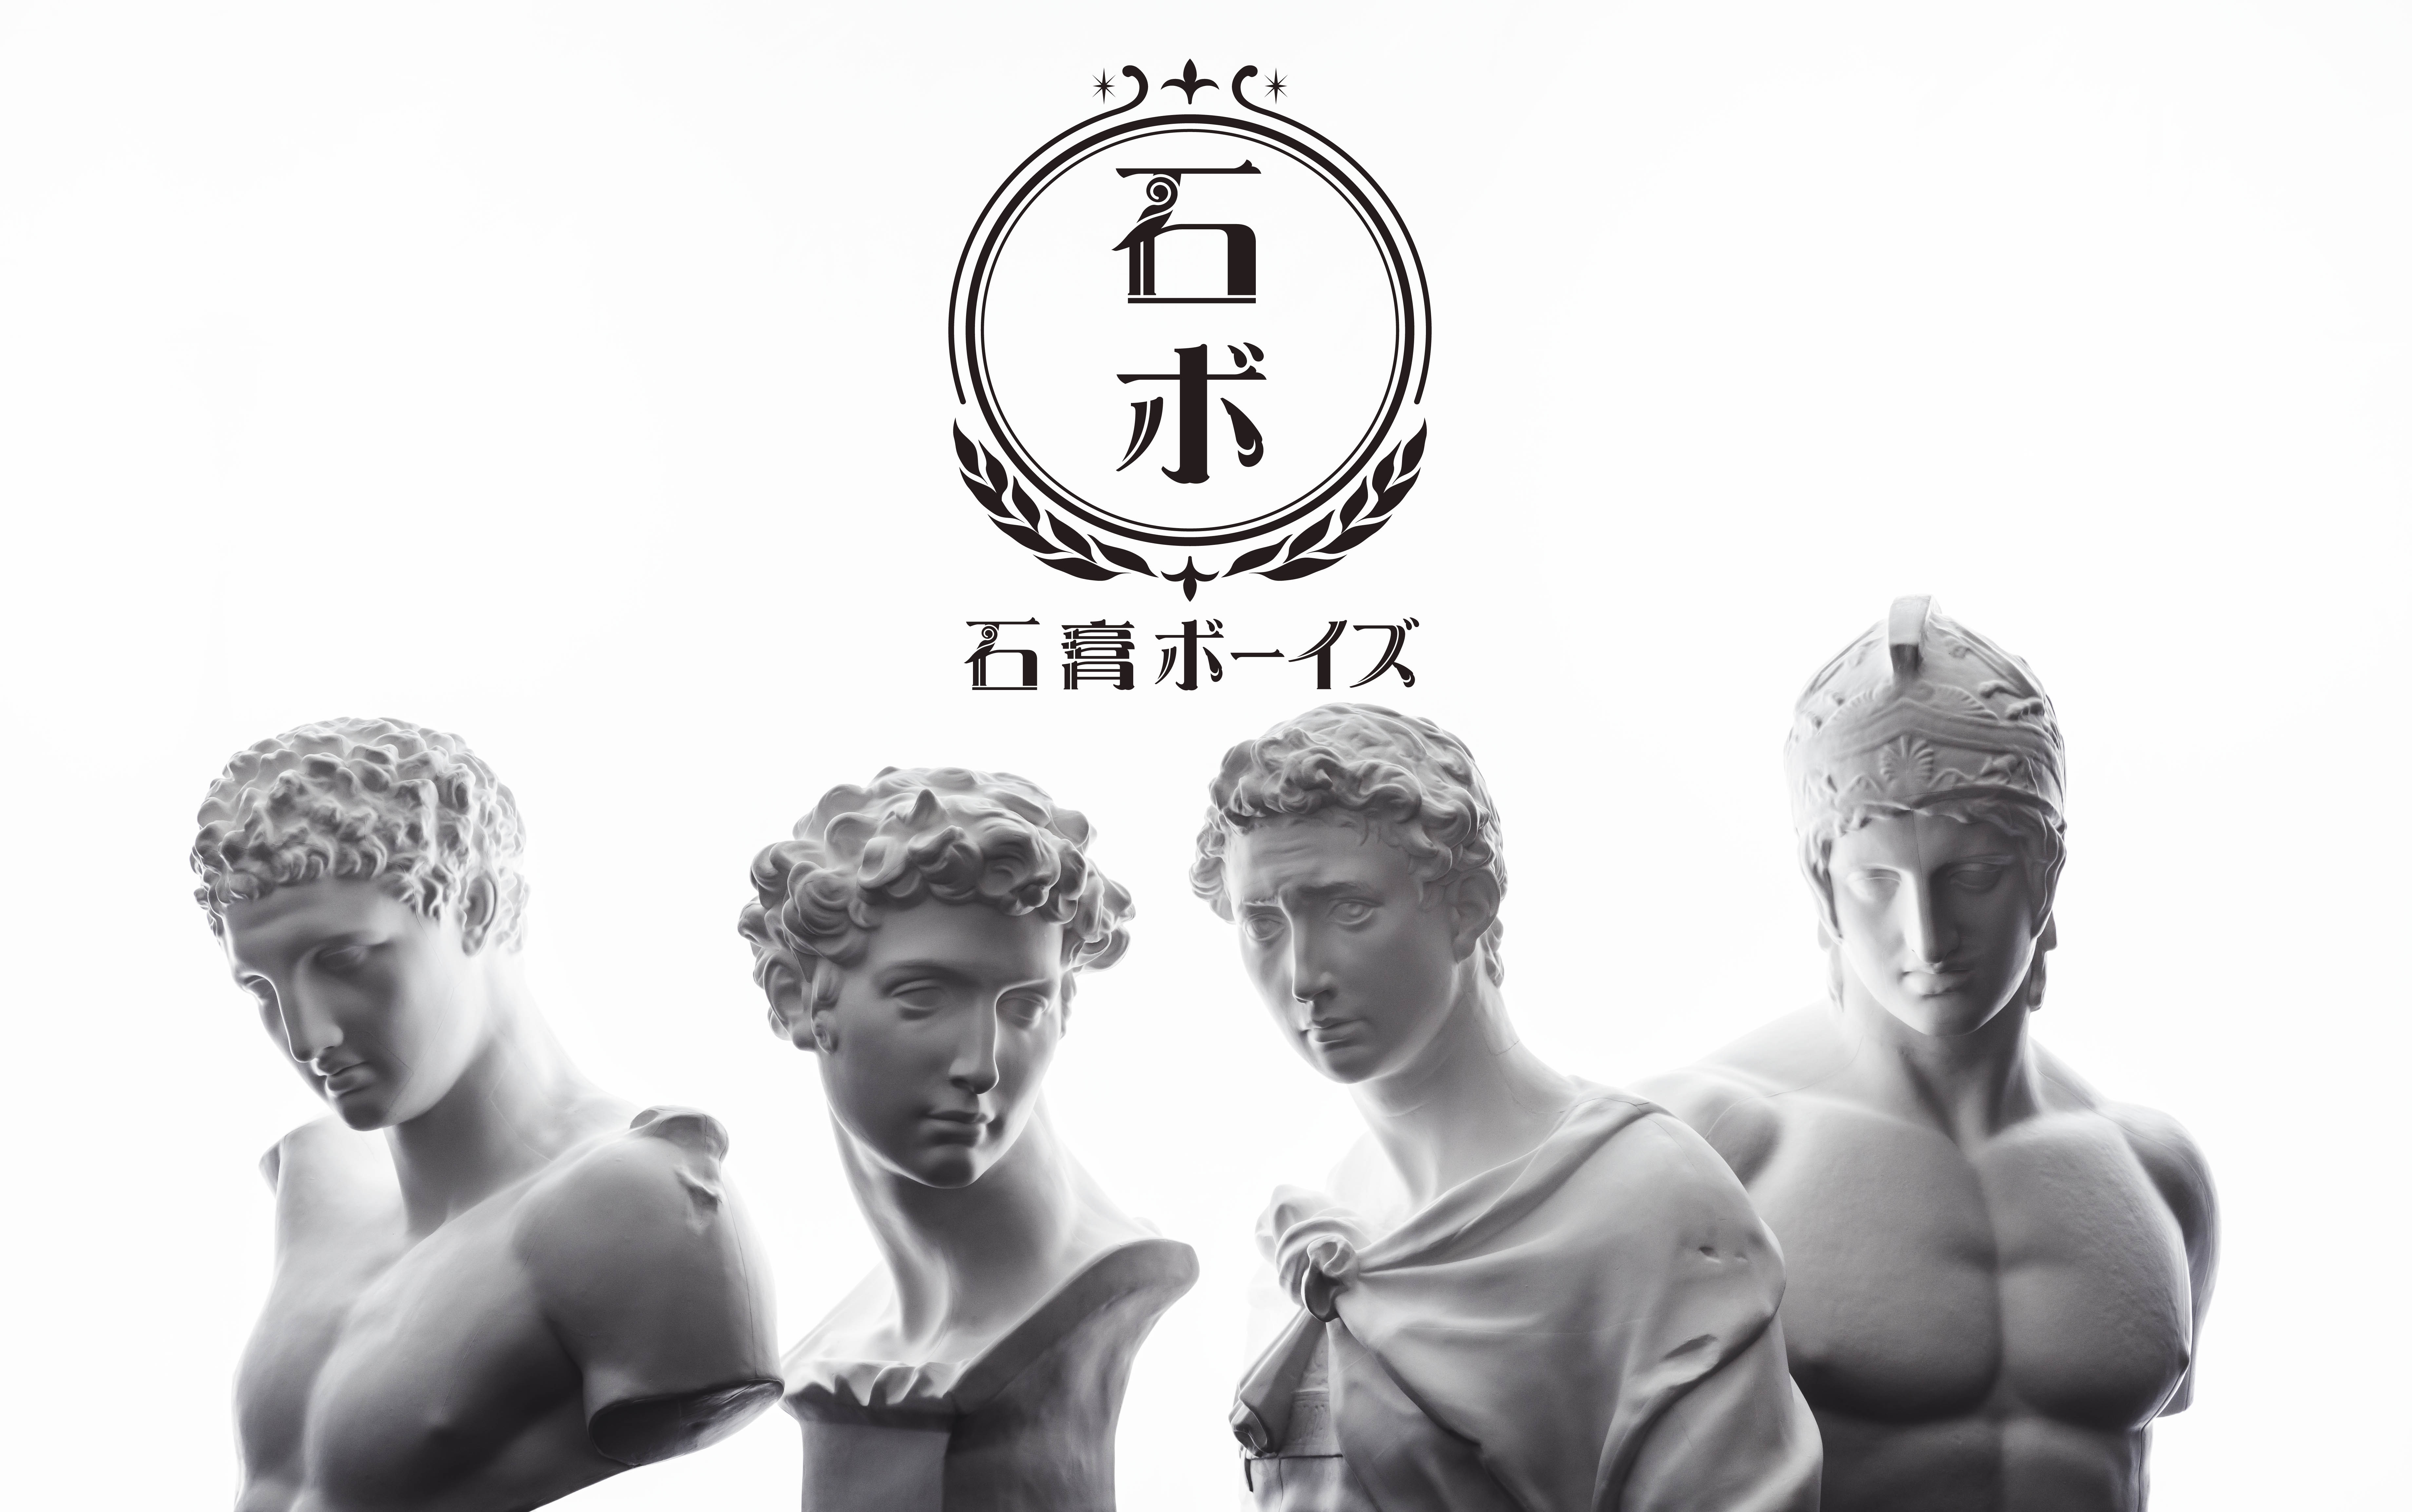 石膏像が芸能活動 キャラクタープロジェクト 石膏ボーイズ 始動 株式会社kadokawaのプレスリリース